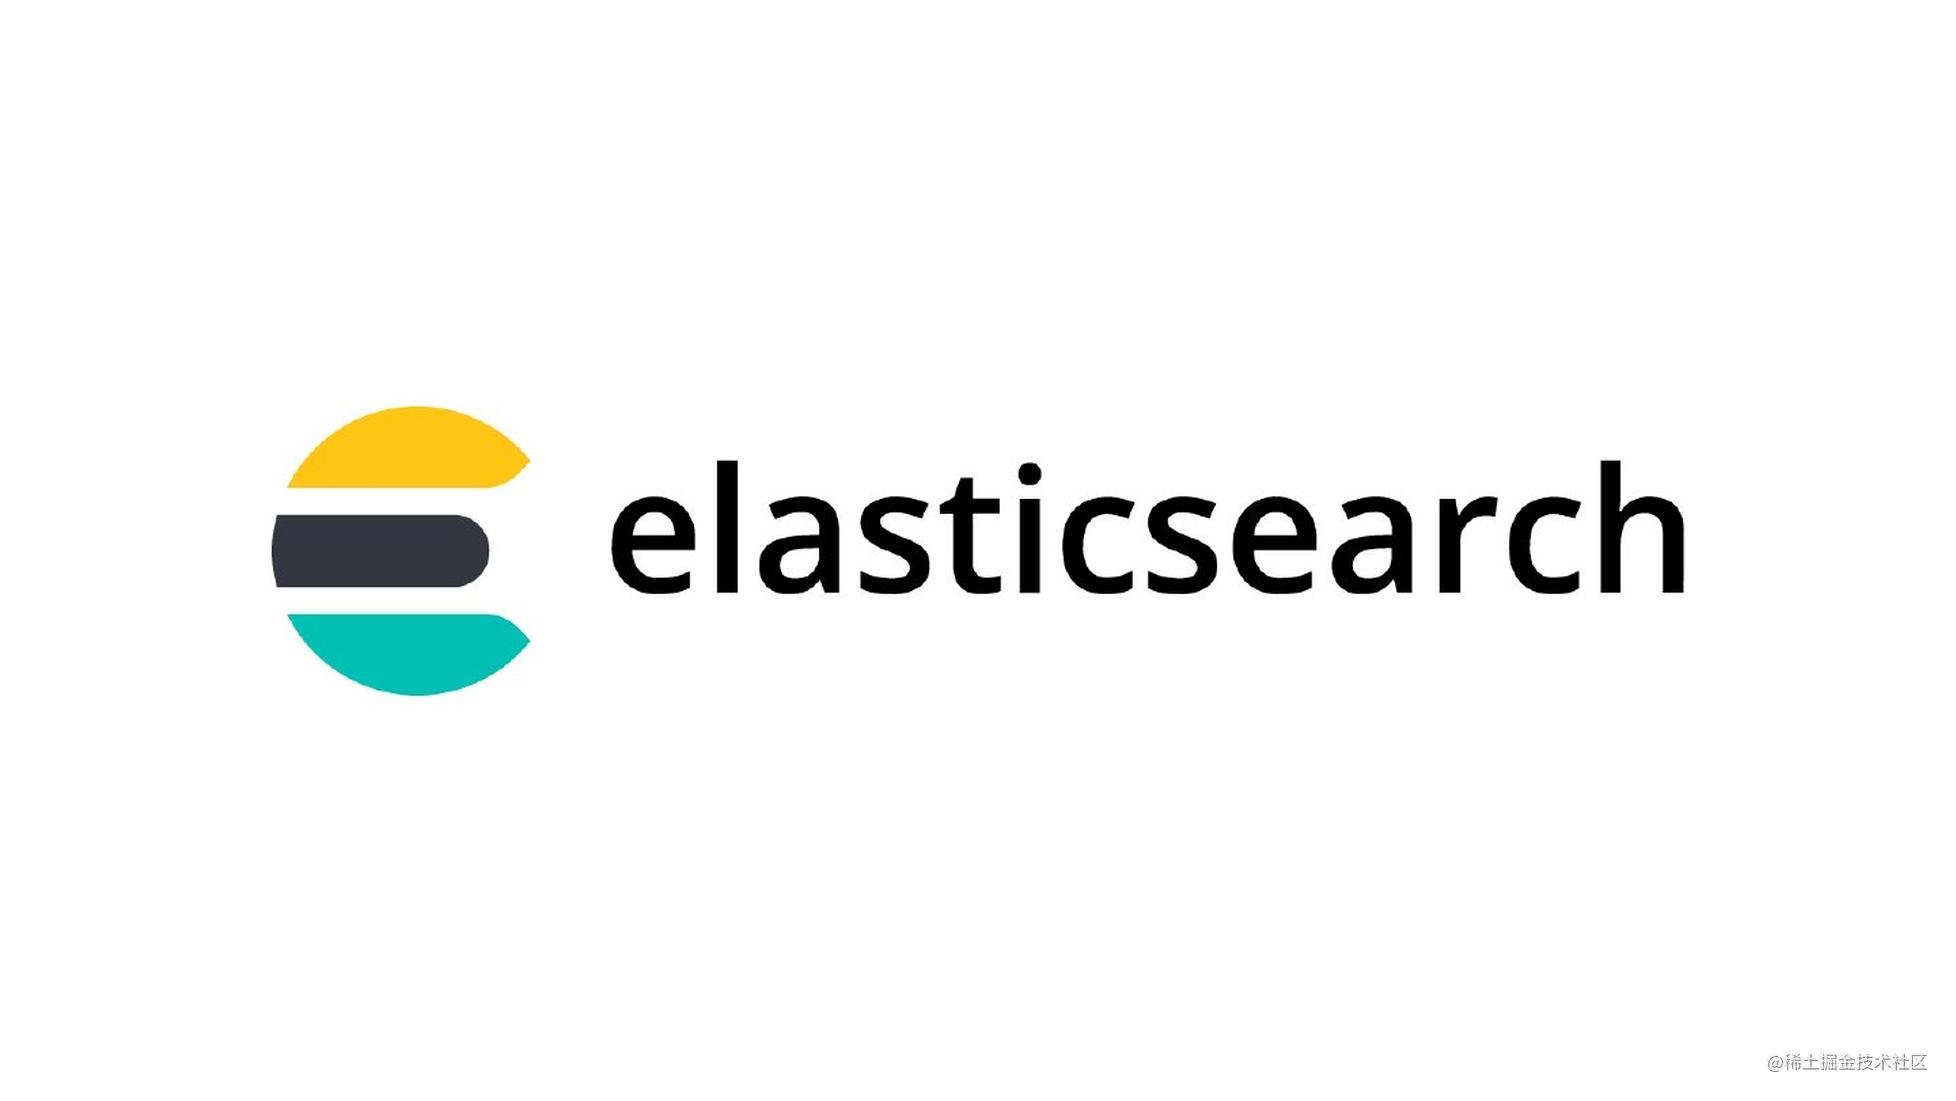 SpringBoot整合Spring Data Elasticsearch（ES7.x），内附完整代码